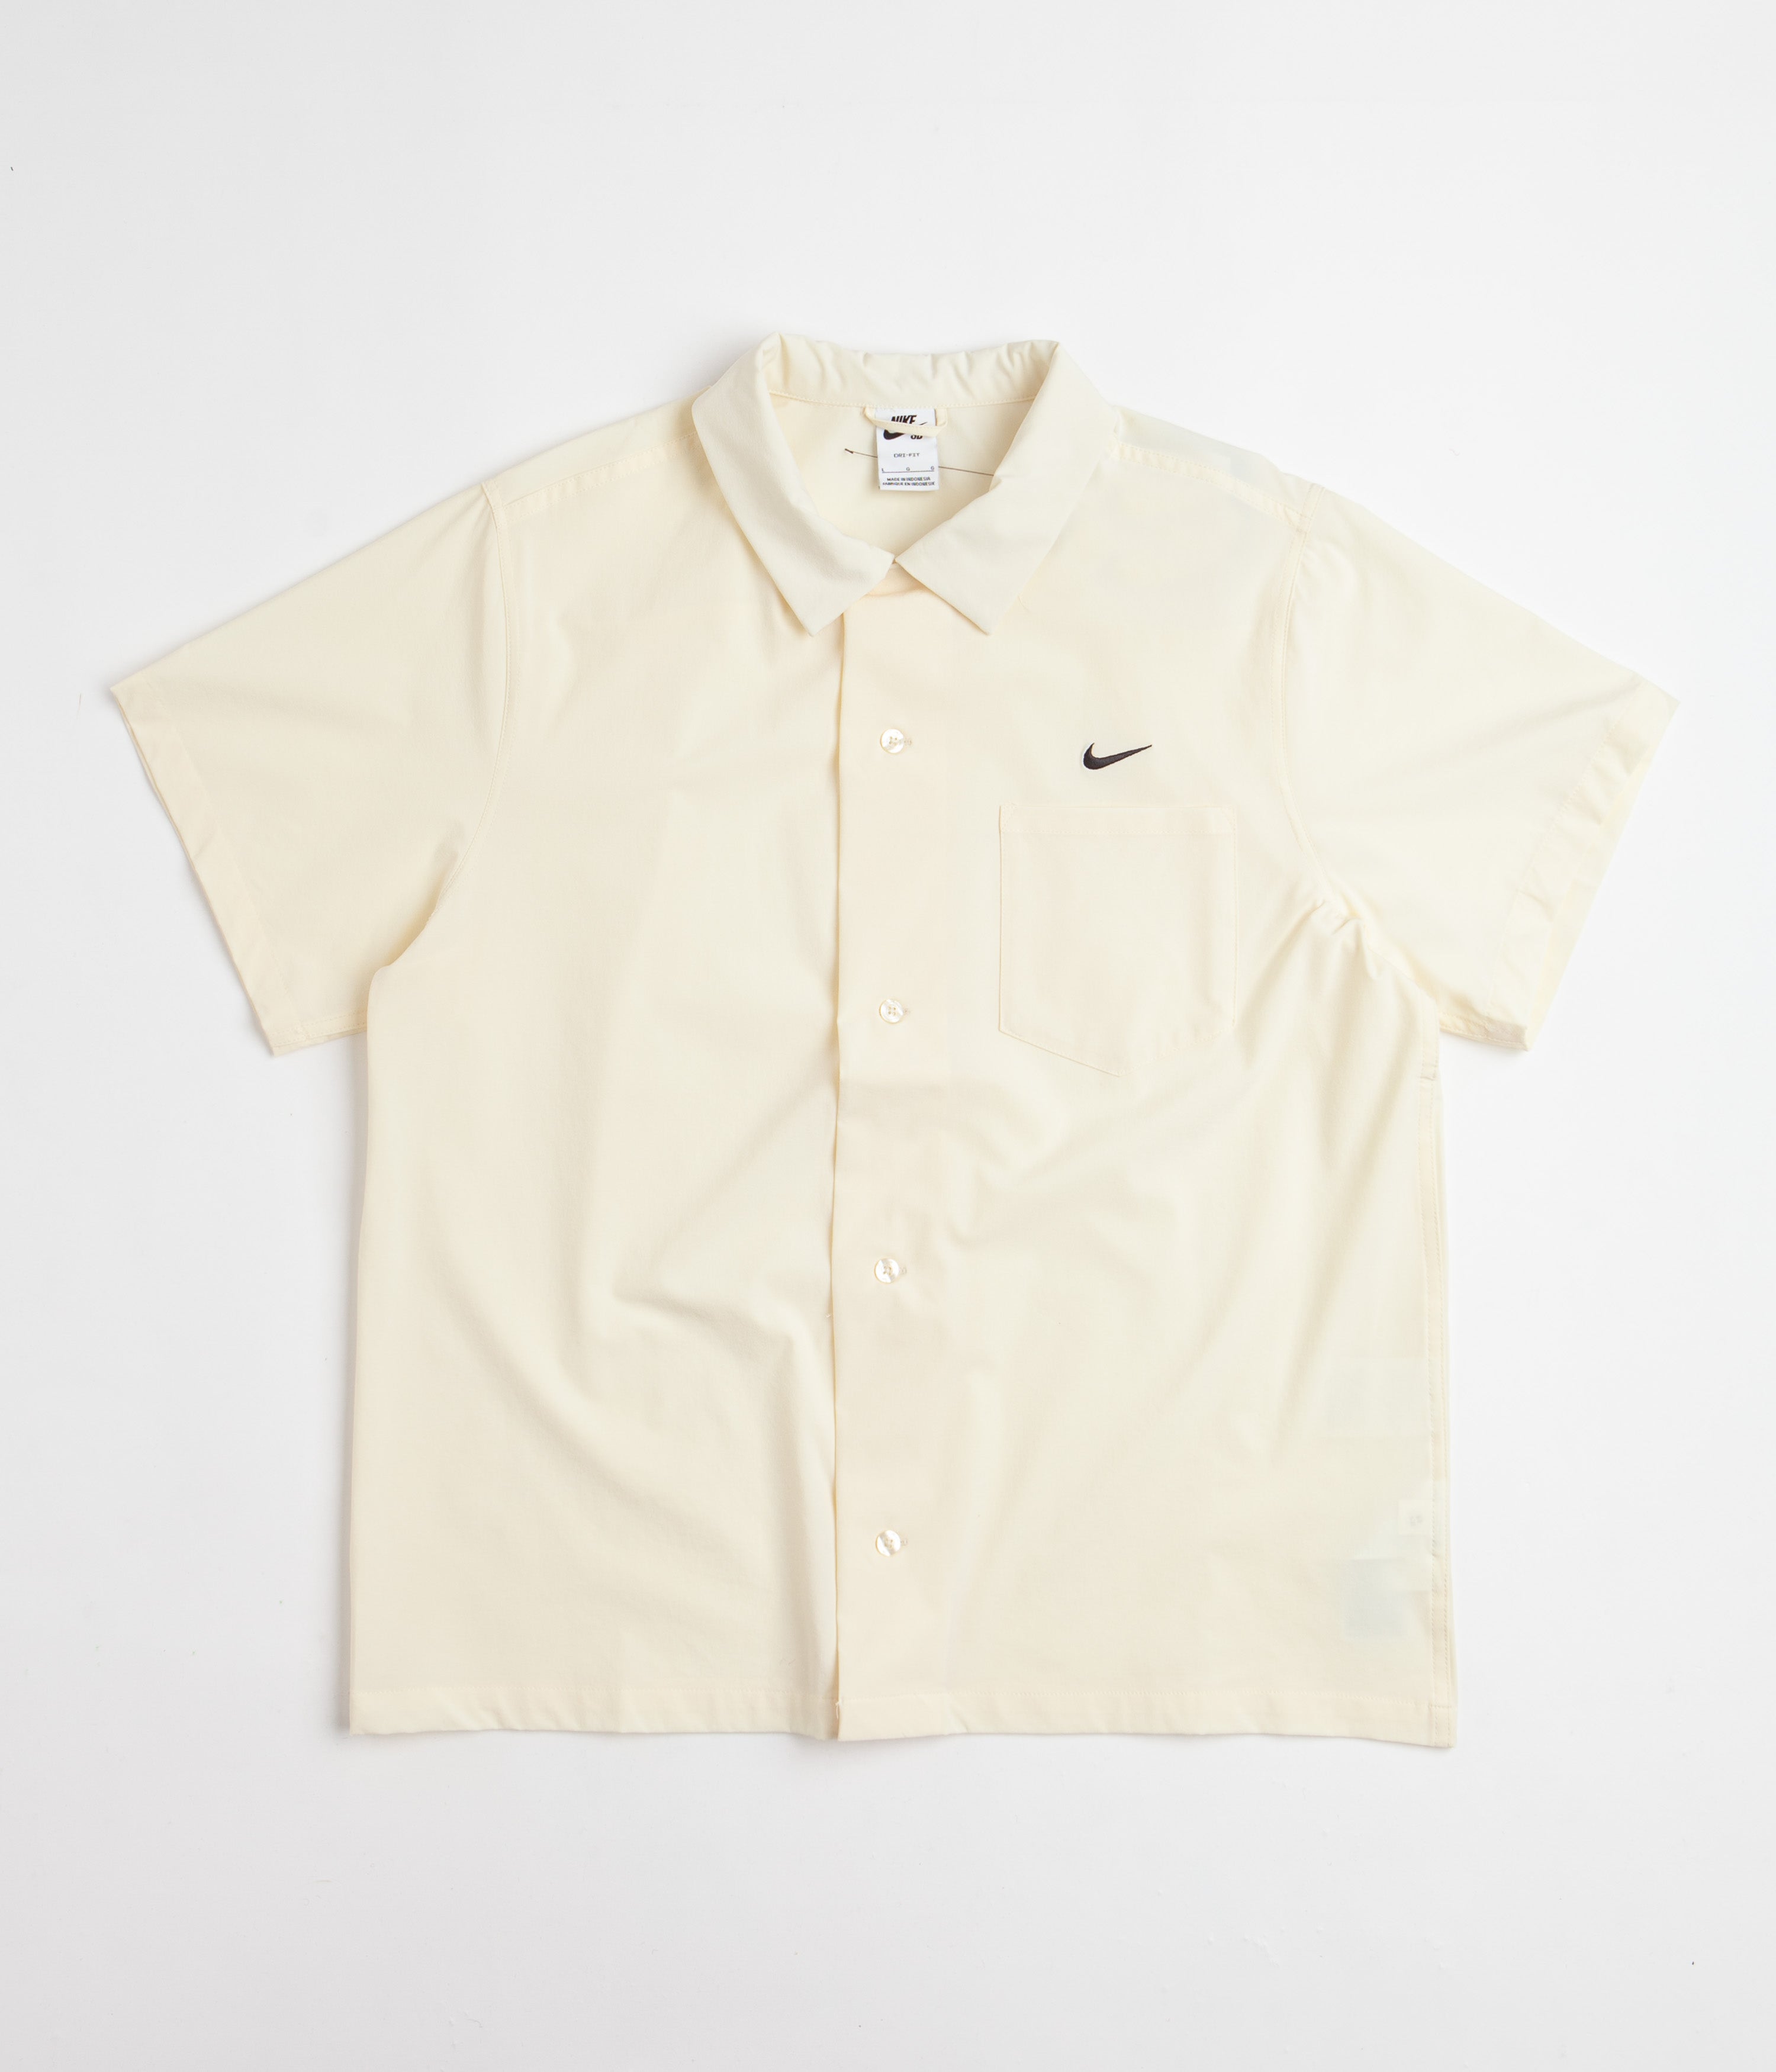 Adidas Tennis Polo Shirt - Cream White / White | Flatspot